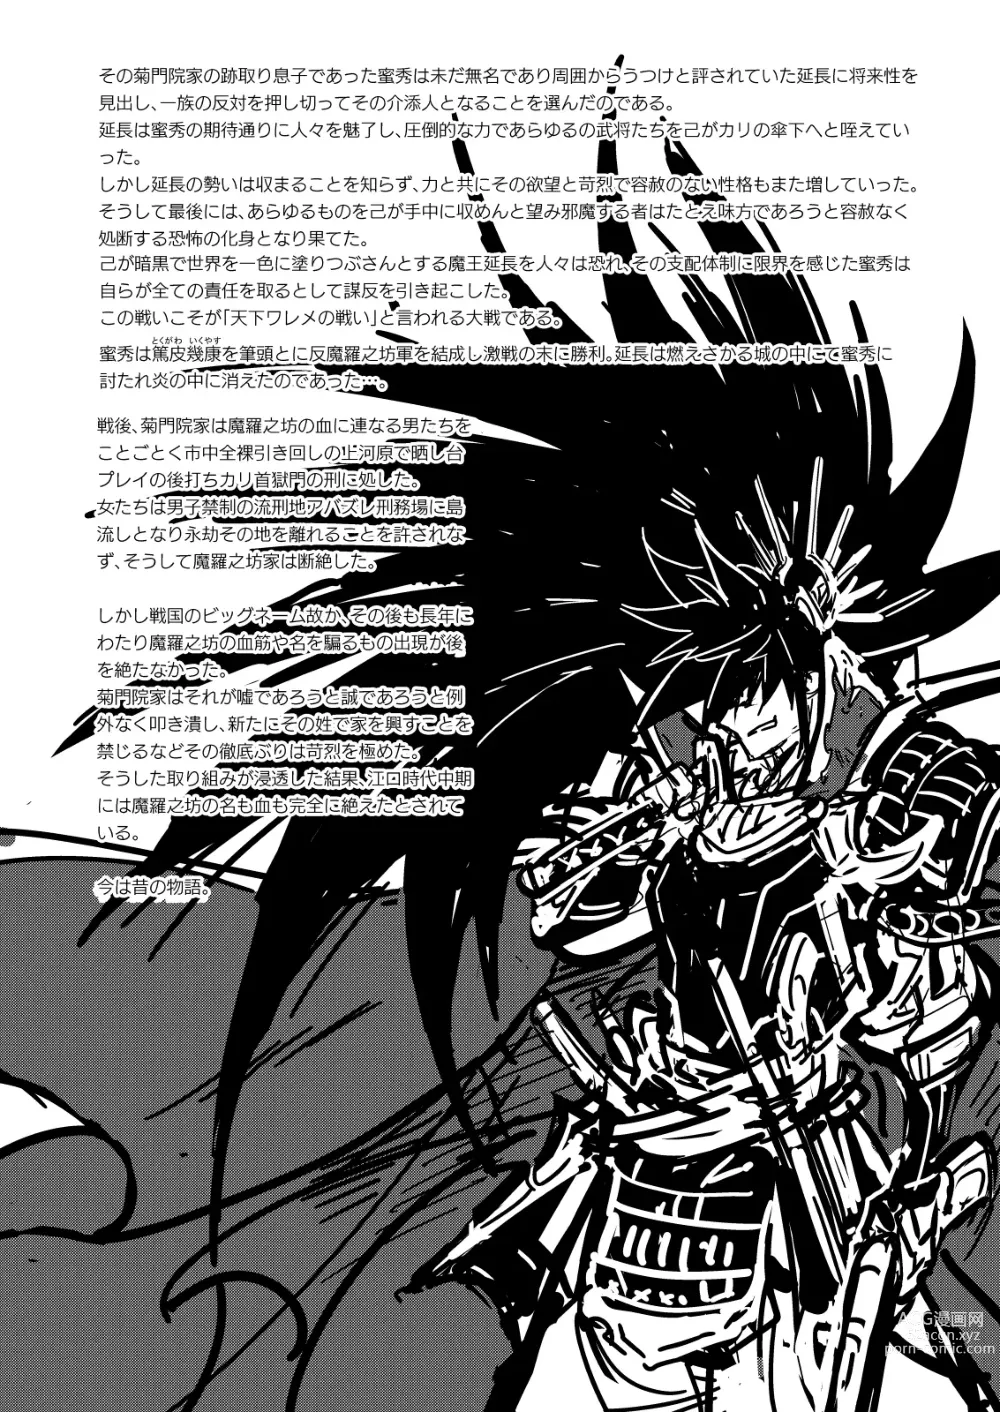 Page 82 of doujinshi MATOMETA-NO